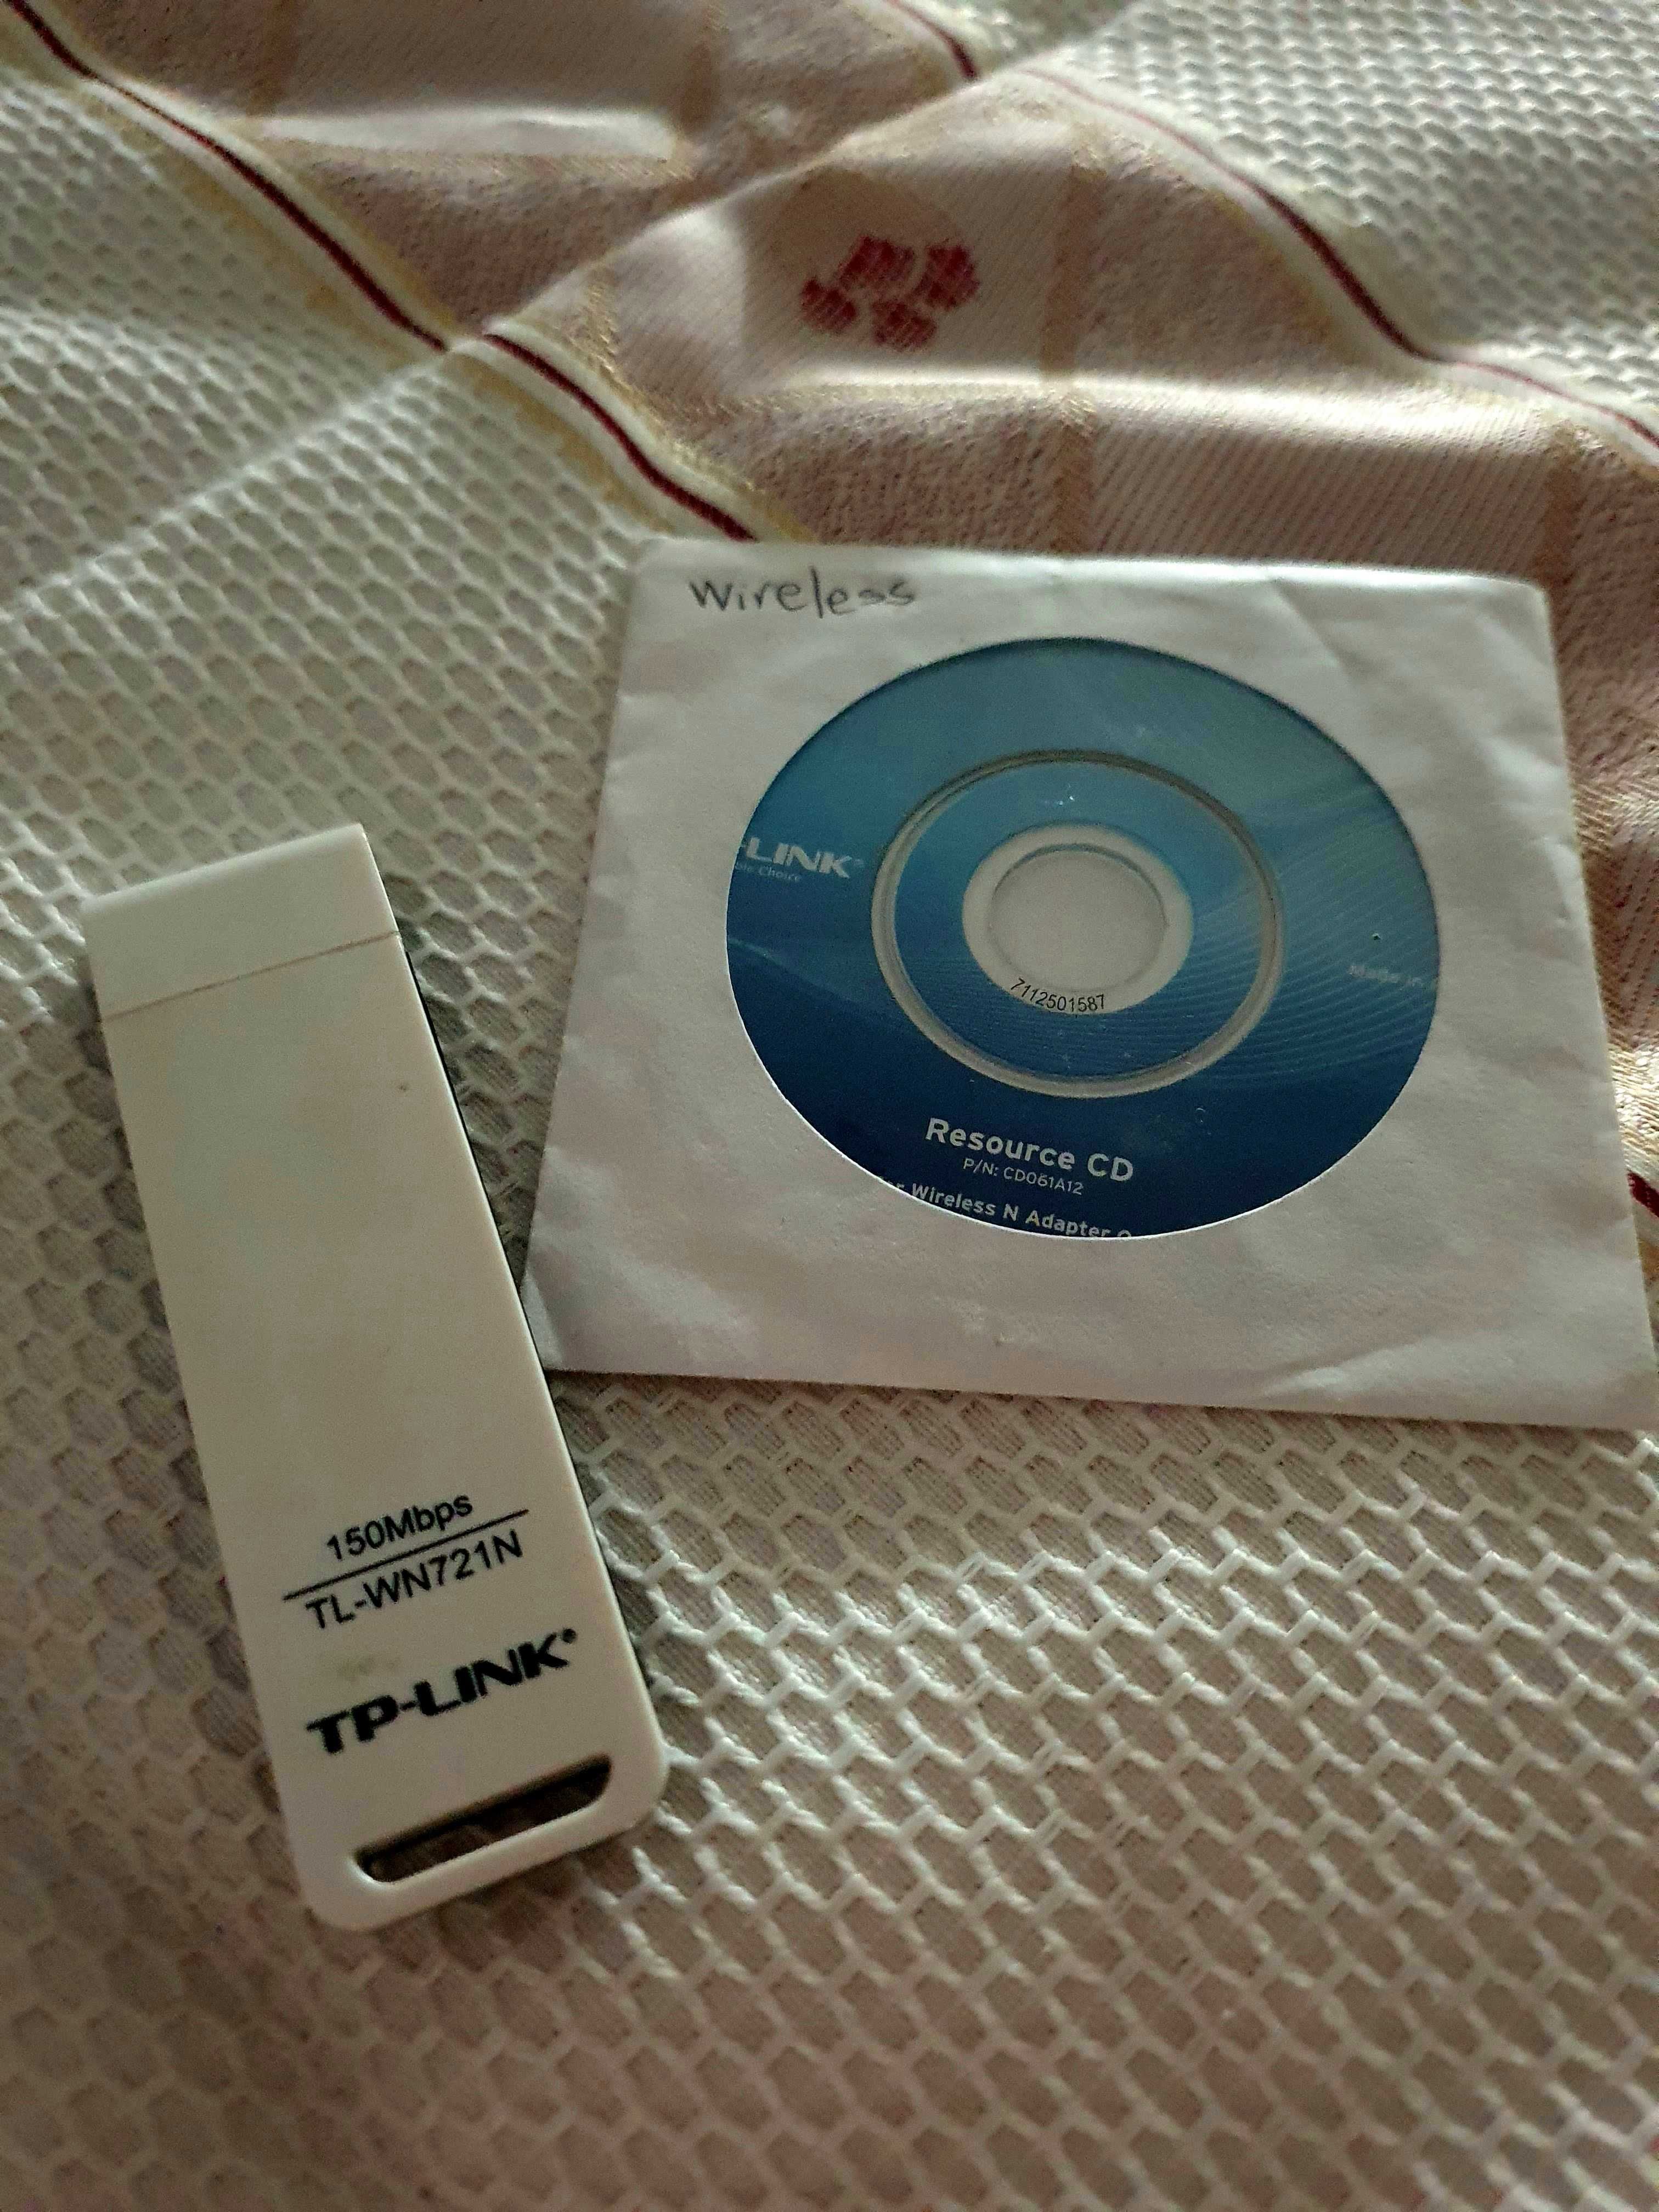 Adaptador USB Wireless TP-Link TL-WN721N